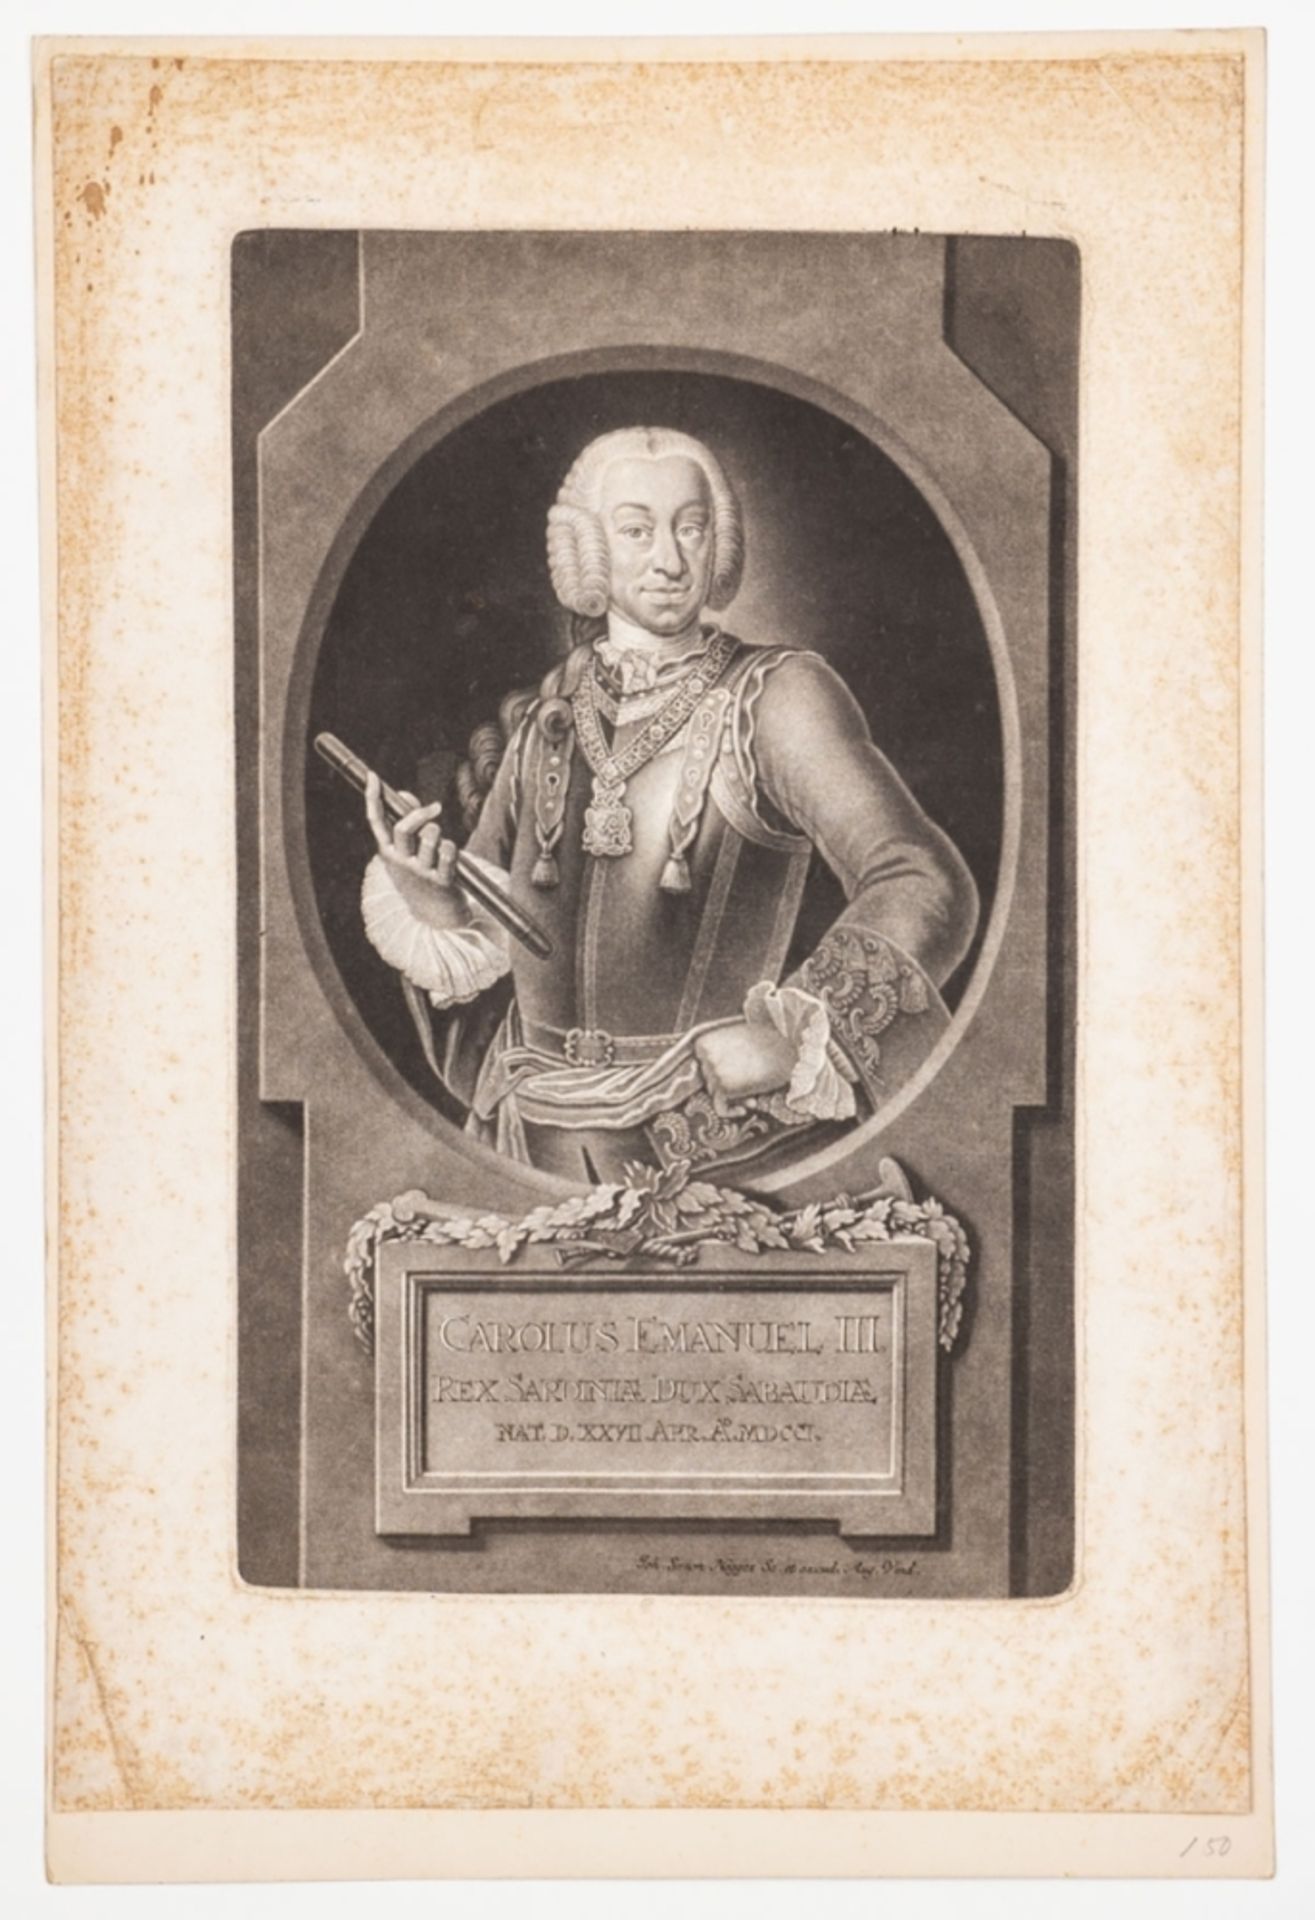 Negges, Carolus Emanuel III. - Bild 2 aus 2